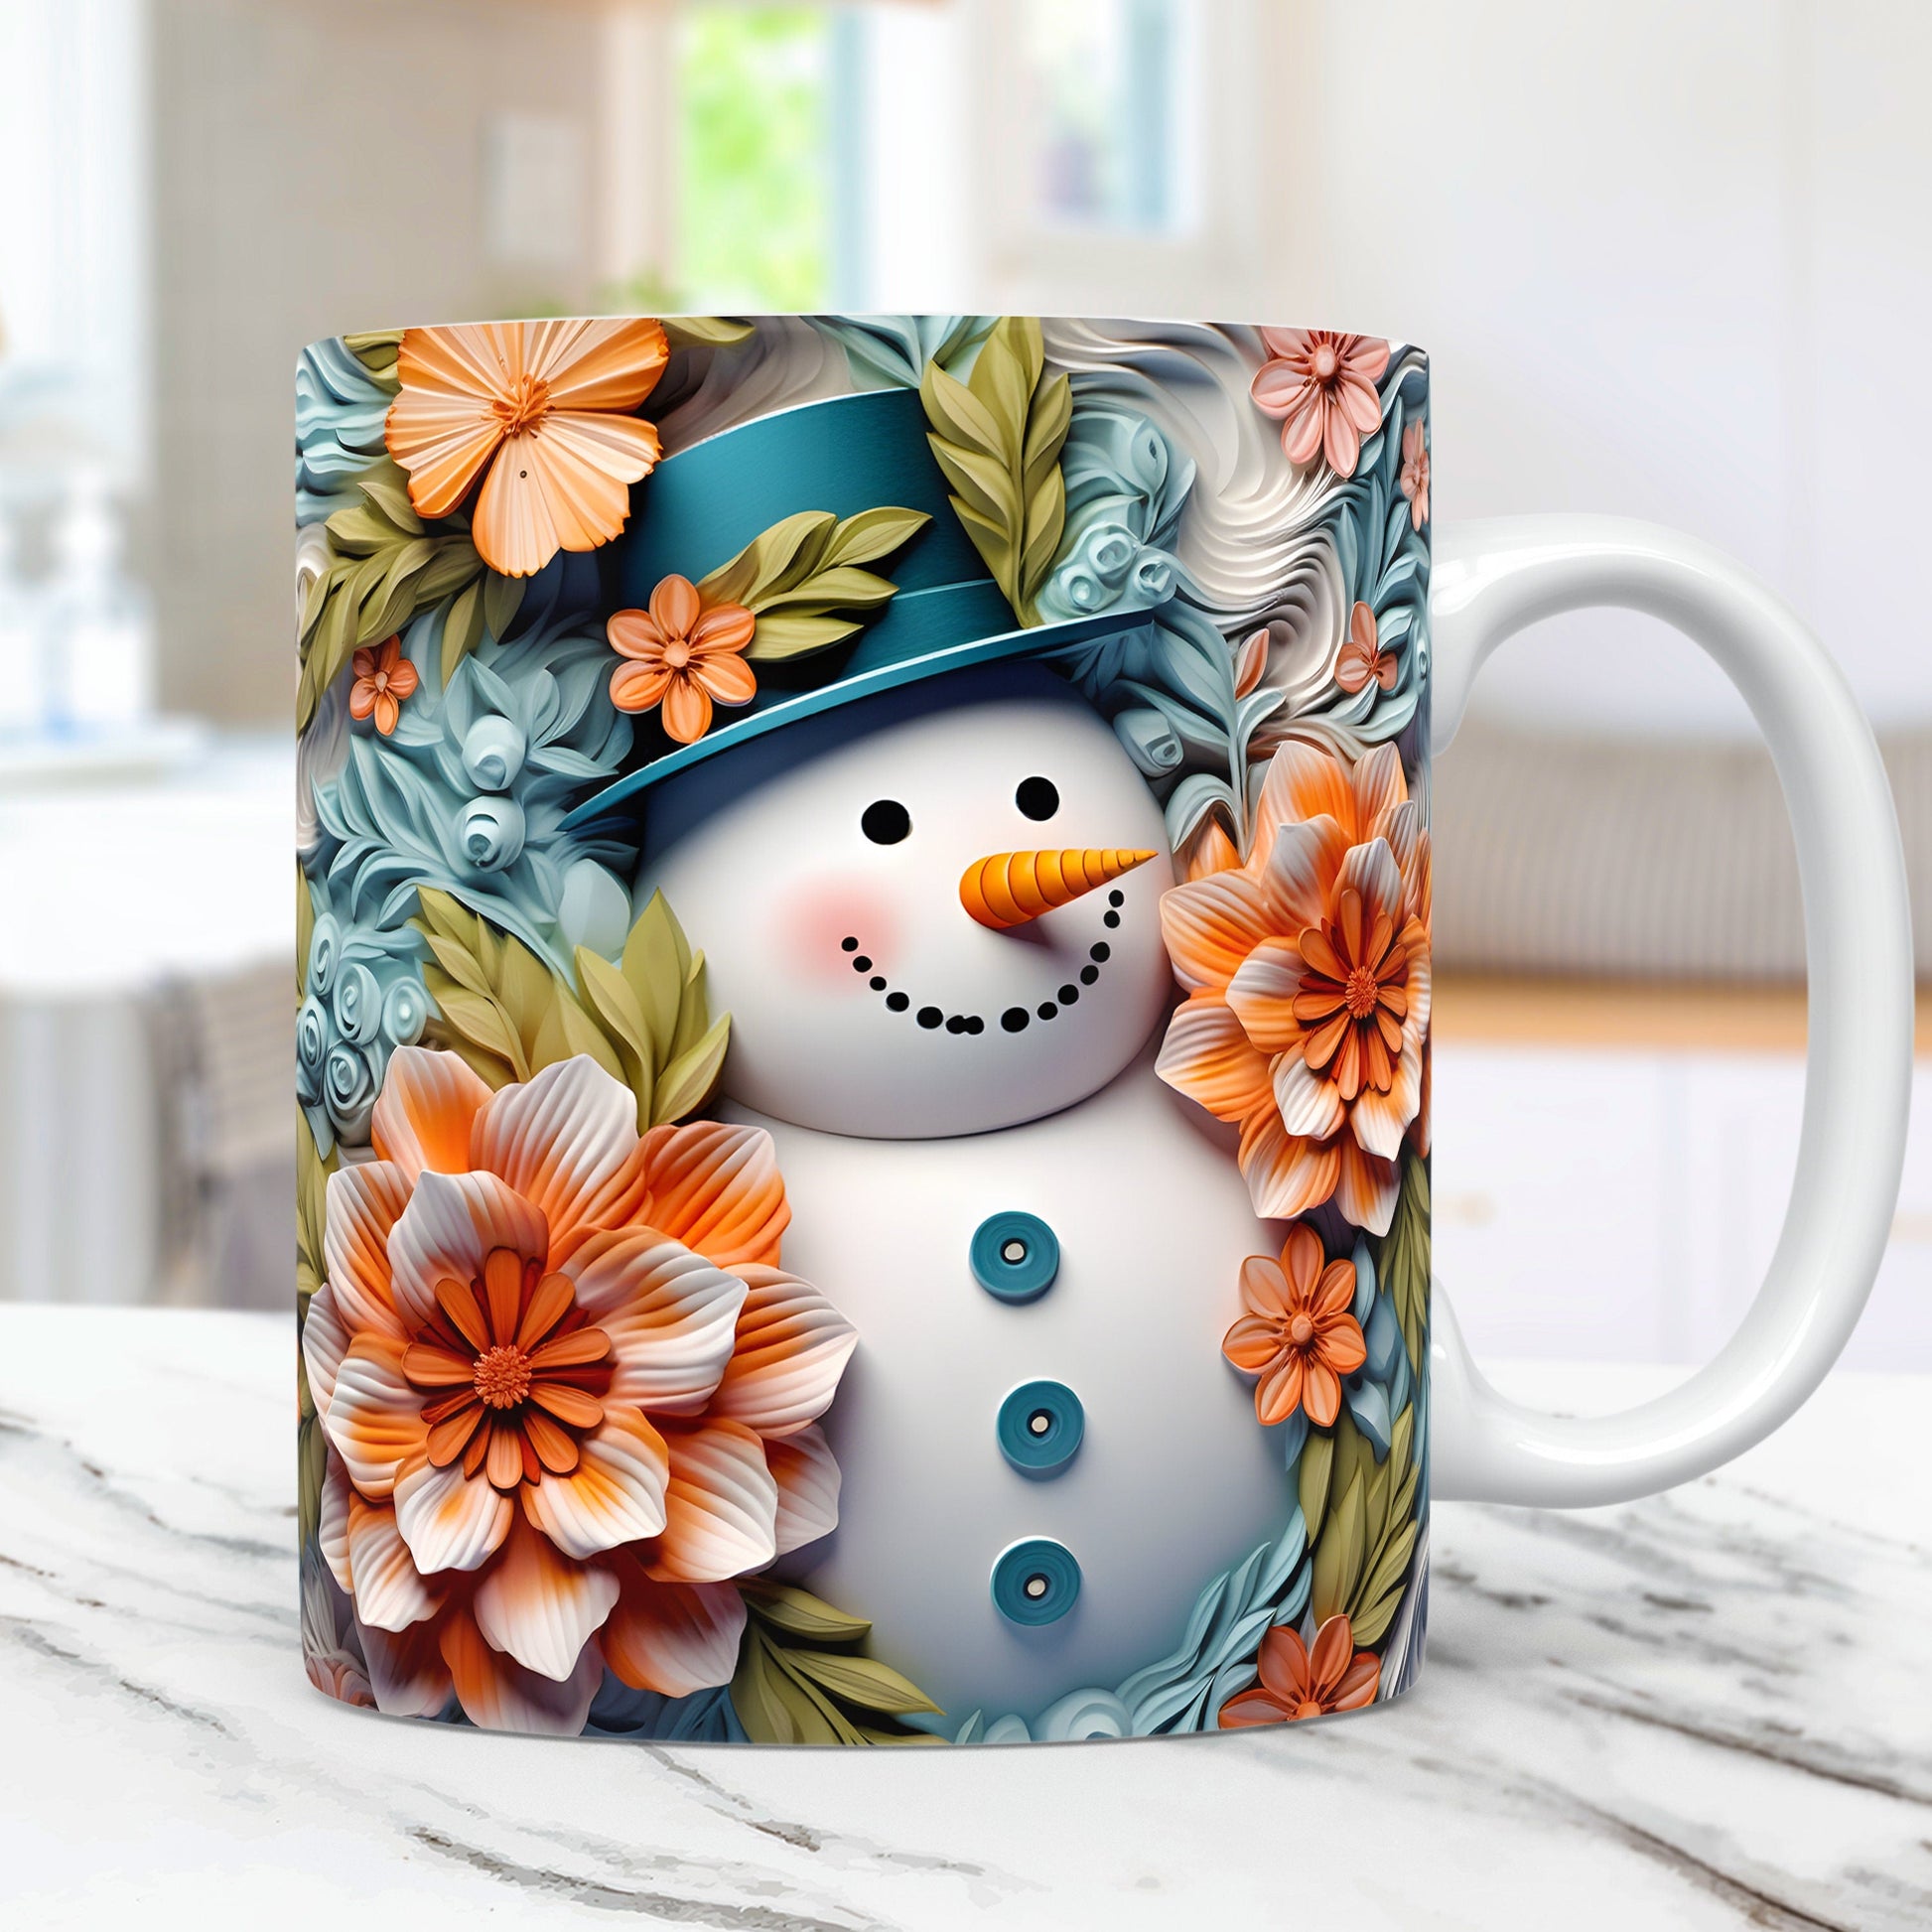 3D Snowman Mug Wrap Christmas Bundle Mug Wrap Sublimation Designs PNG, 11oz and 15oz Mug Template, 3D Christmas Mug Wrap - VartDigitals